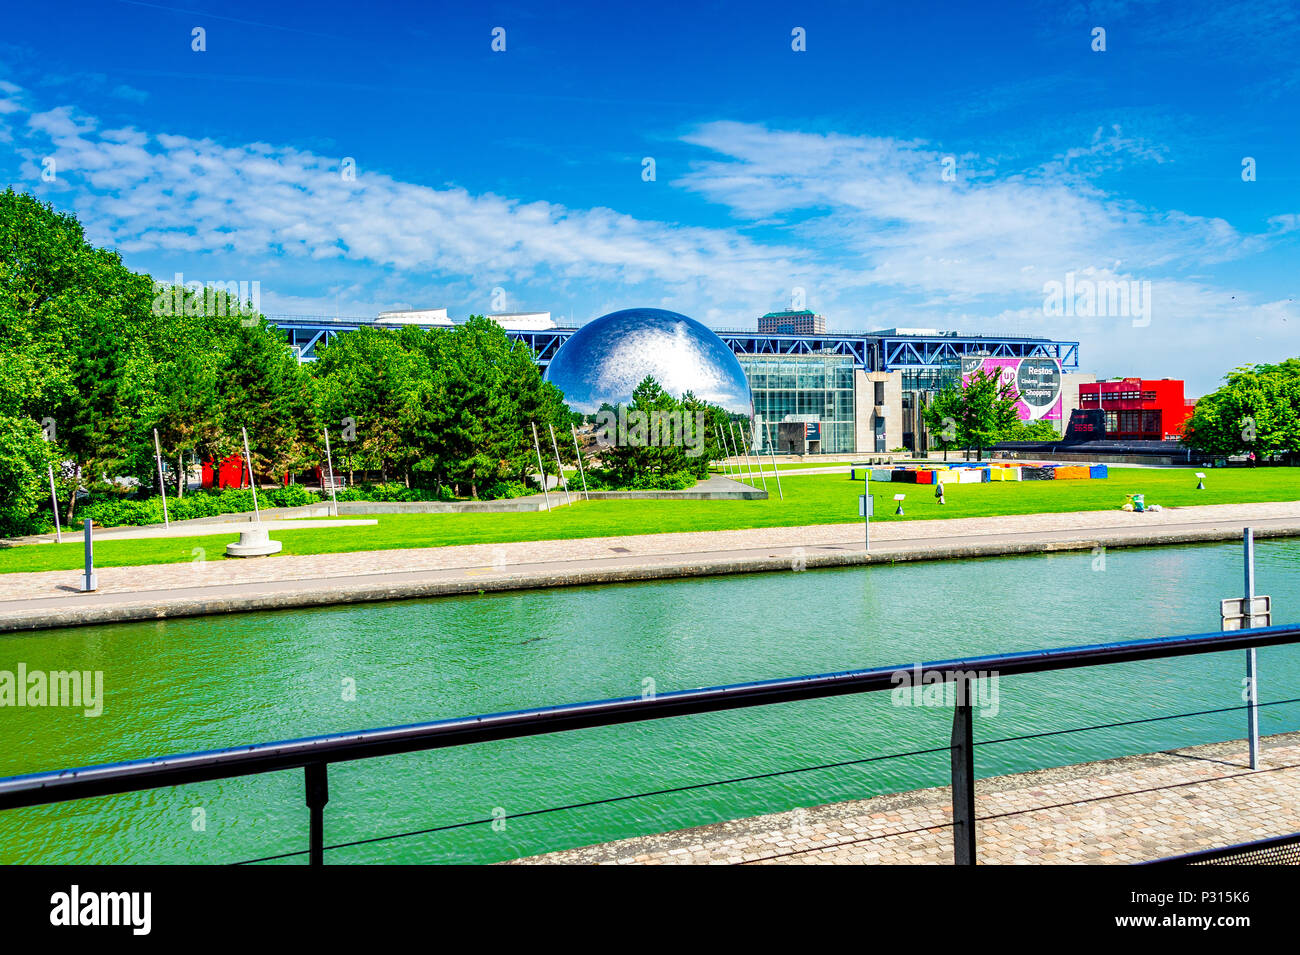 Cité des Sciences et de l'Industrie within the Parc de la Villette in Paris, France Stock Photo